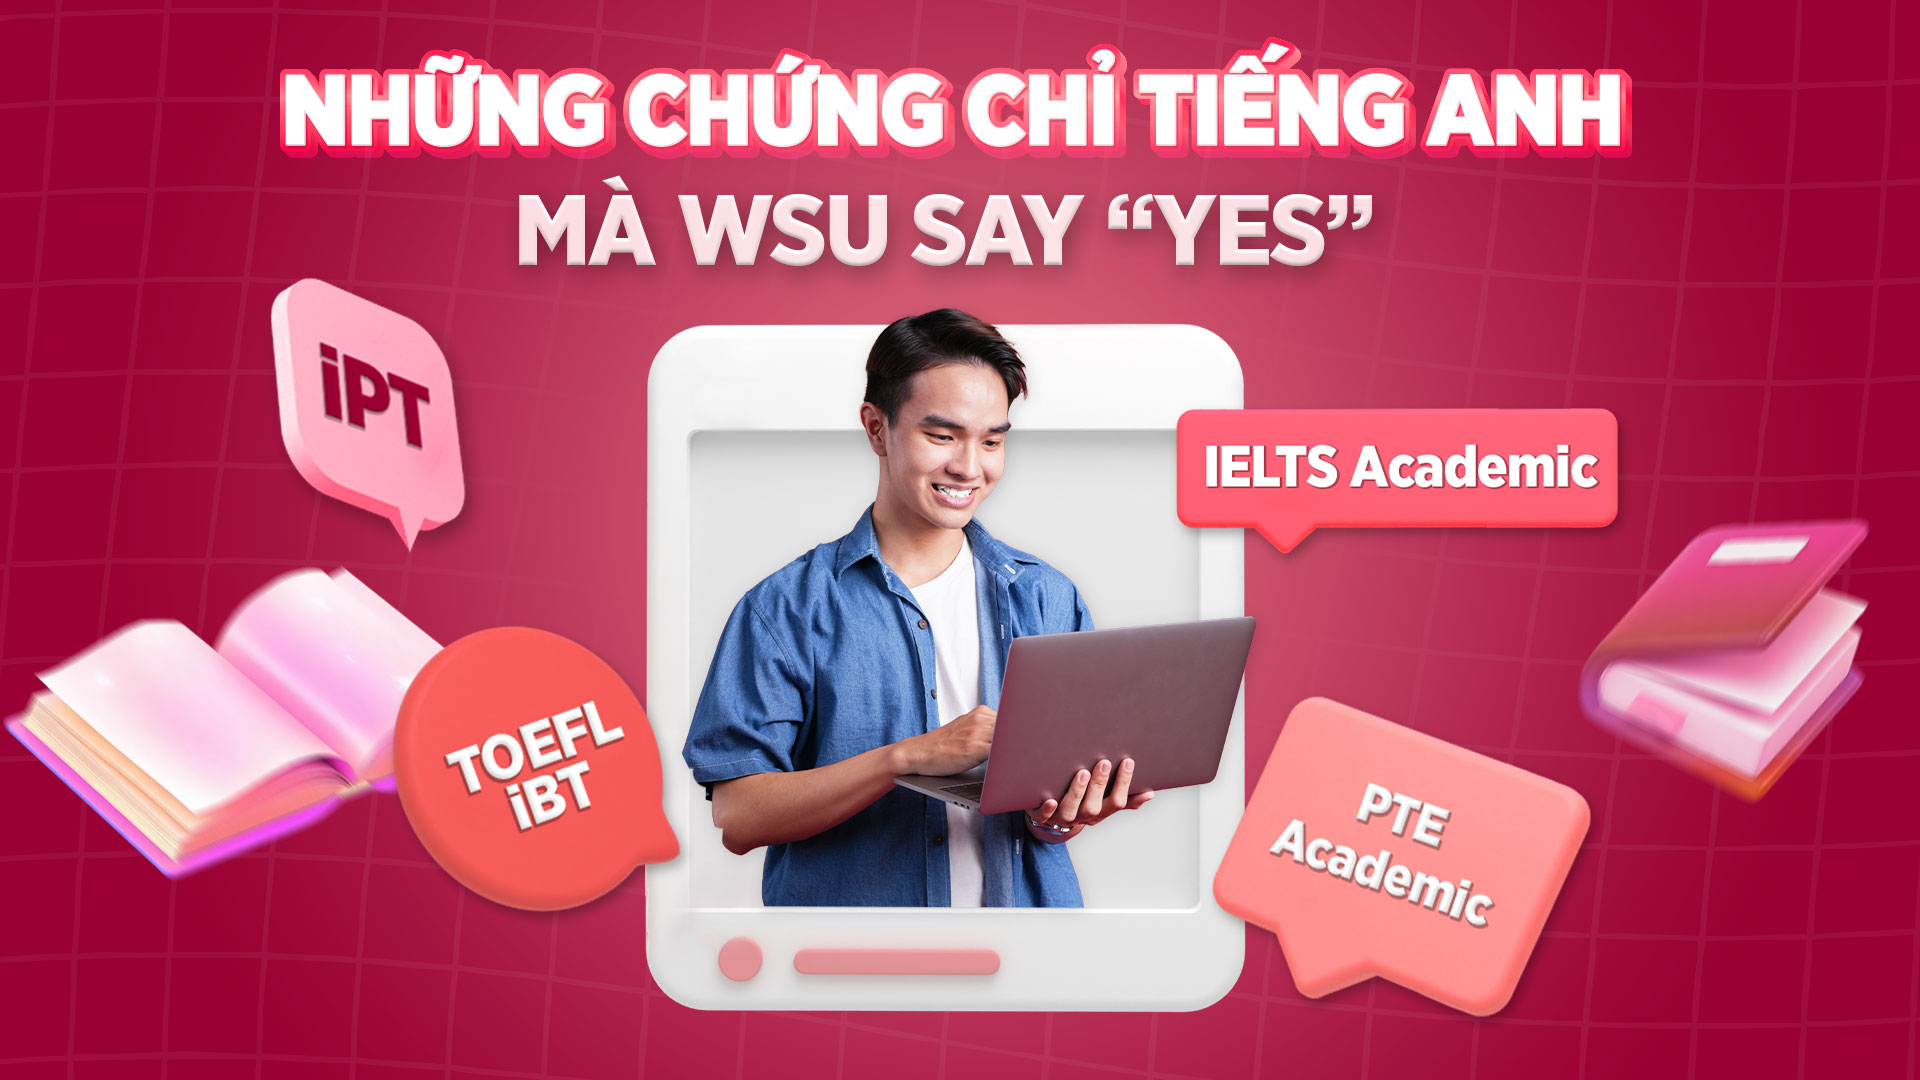 Ngoài IELTS, Đại học Western Sydney, Cơ sở Việt Nam còn chấp nhận các chứng chỉ tiếng Anh khác, bao gồm: TOEFL iBT, PTE Academic, iPT (Internet-based Placement Test)